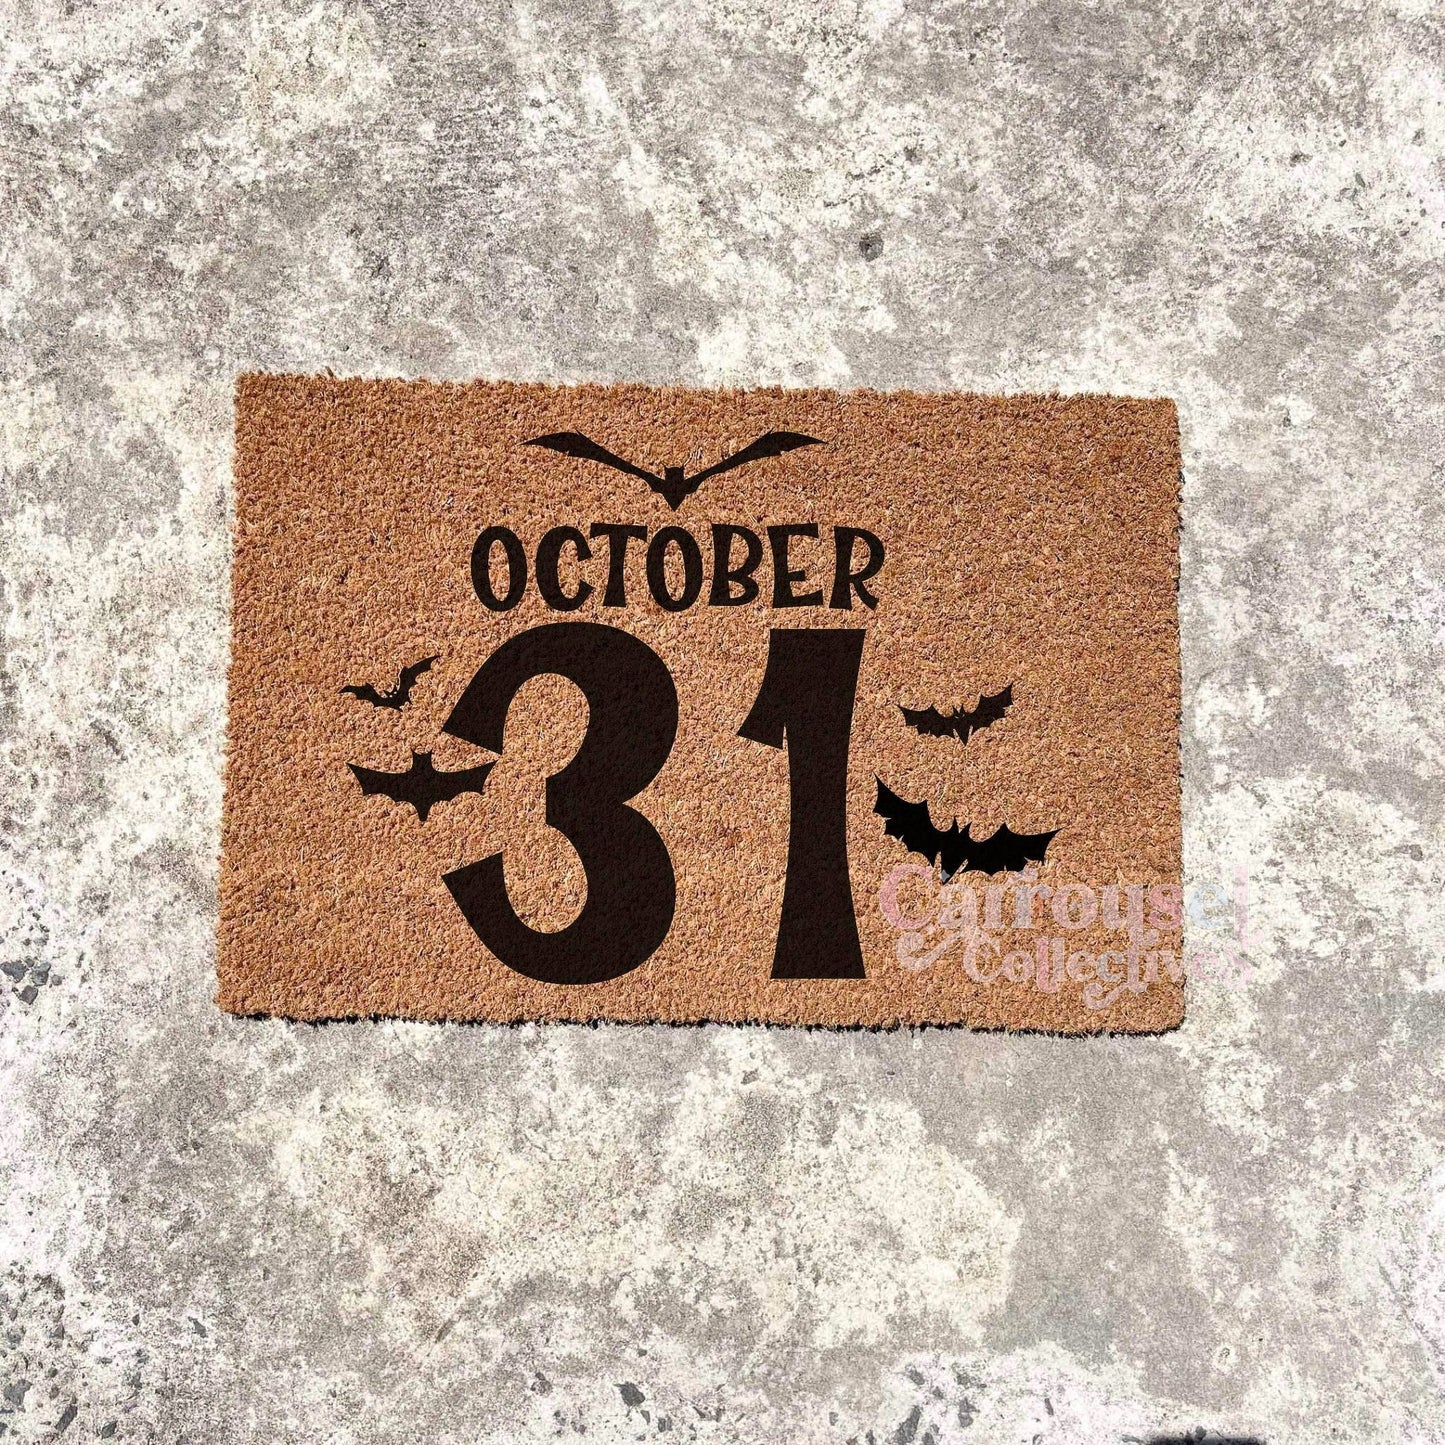 October 31 doormat, Halloween Doormat, Spooky Doormat, Creepy Doormat